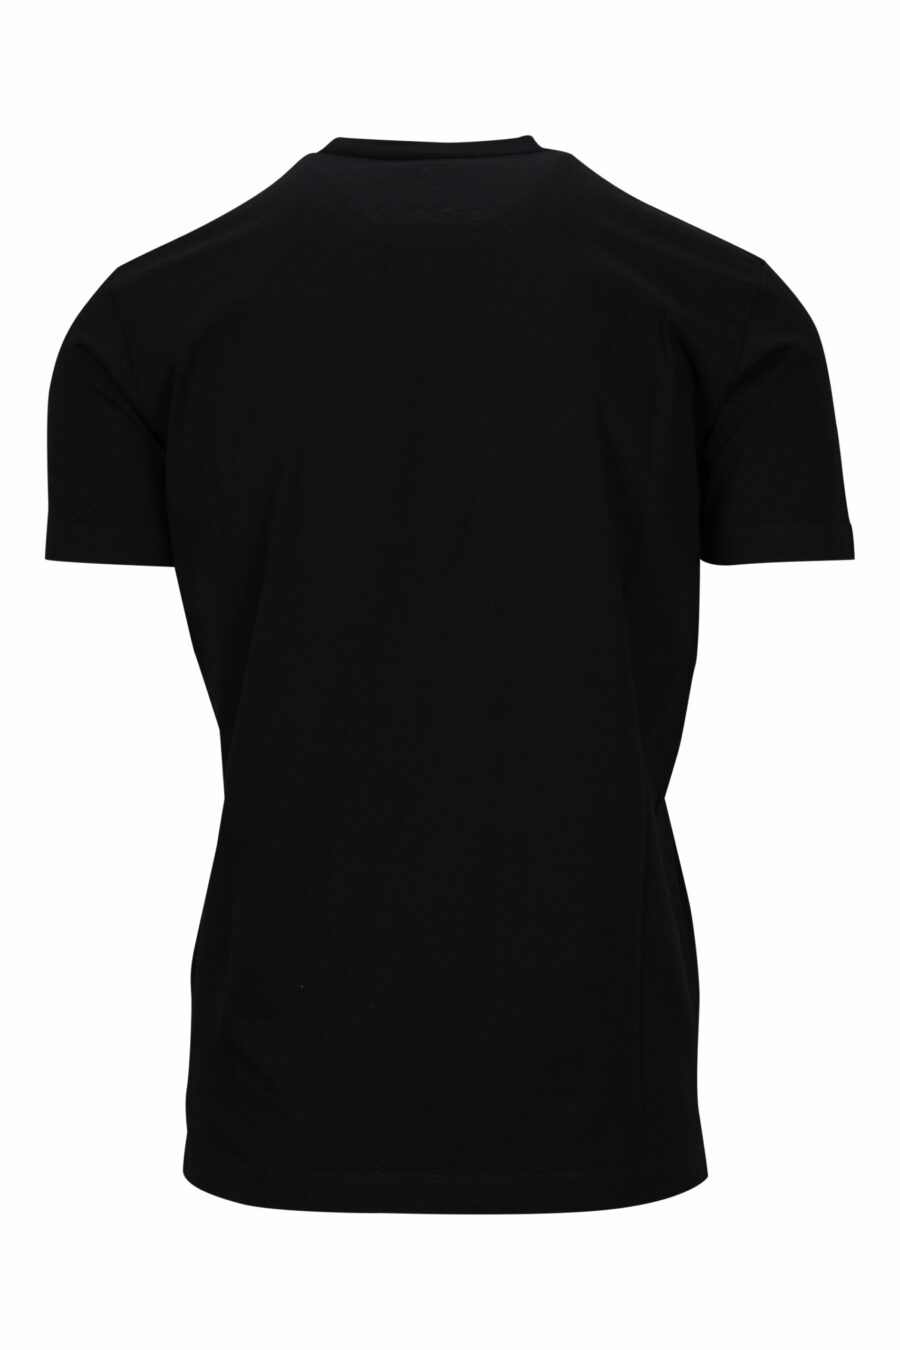 Black T-shirt with basketball dog maxilogo - 8054148332662 1 scaled